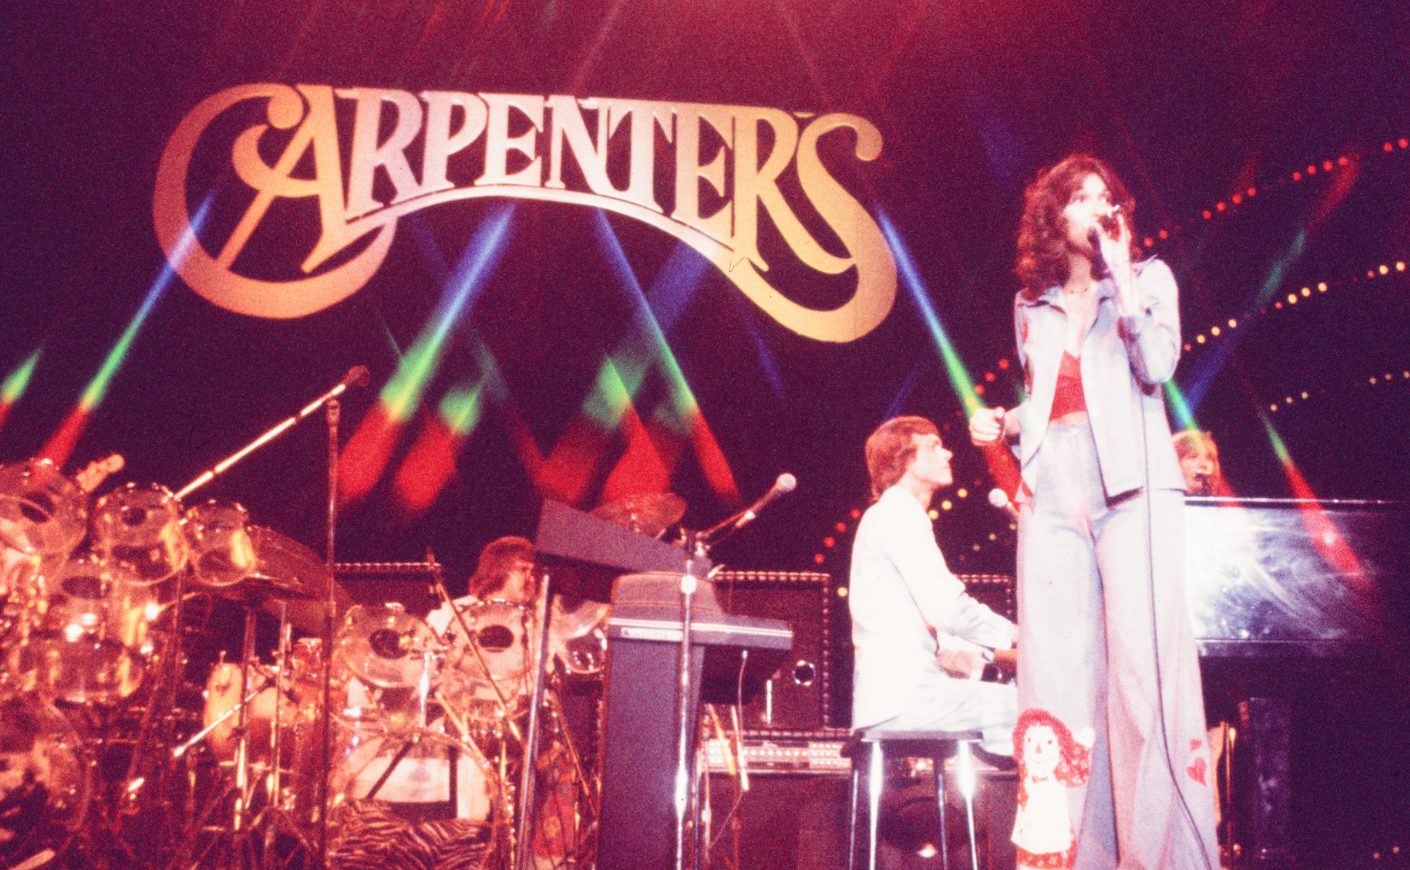 Karen Carpenter performs on stage